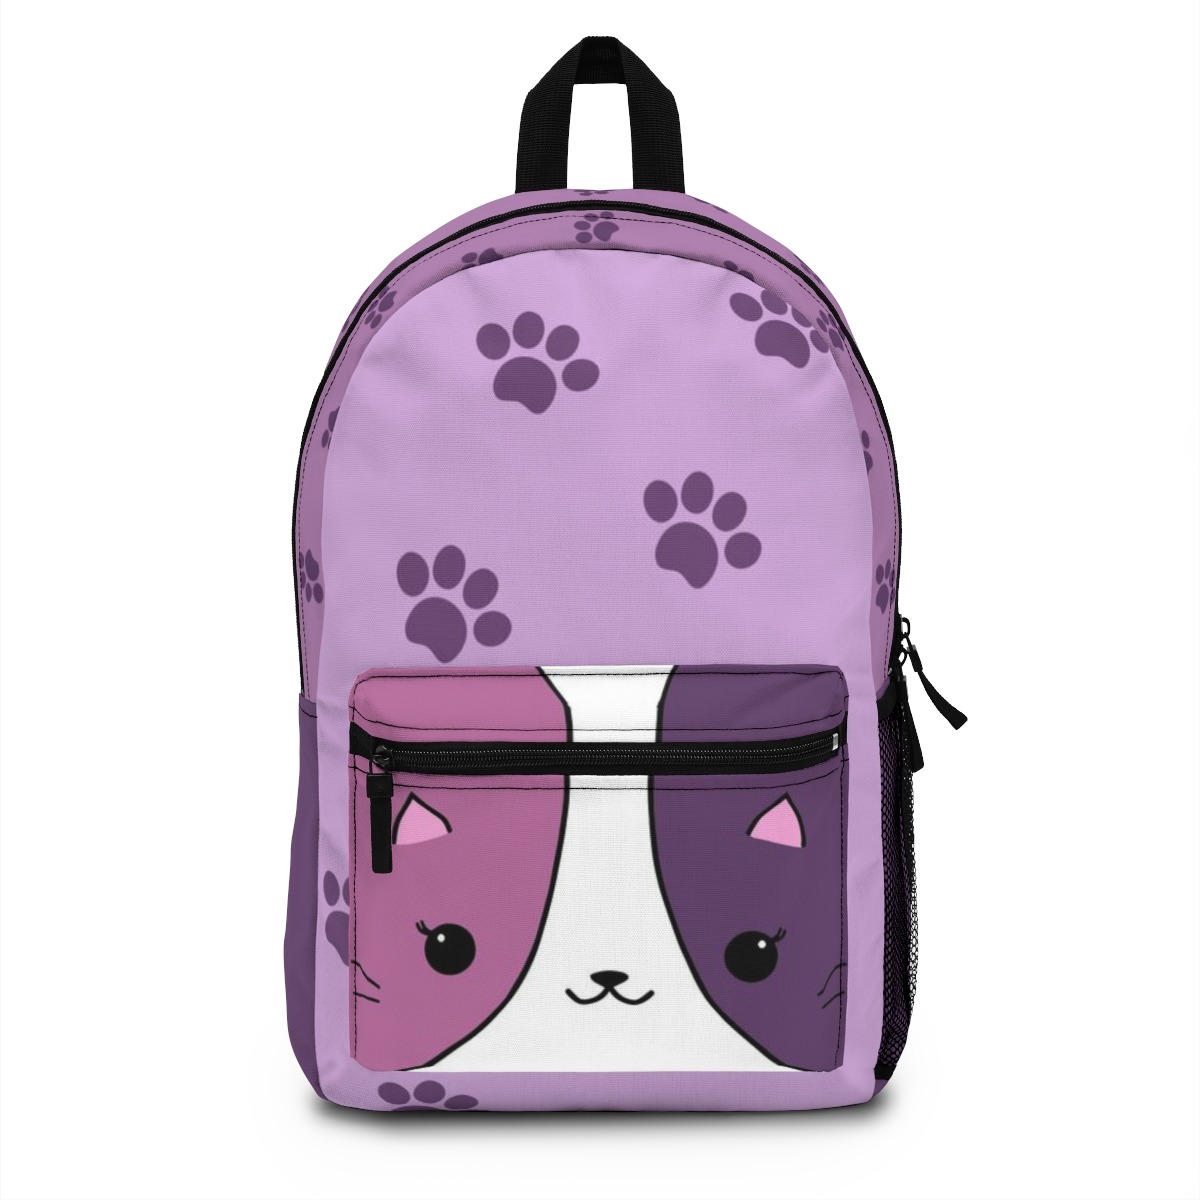 Buy Aphmau cat pink and purple Backpack ⋆ NEXTSHIRT